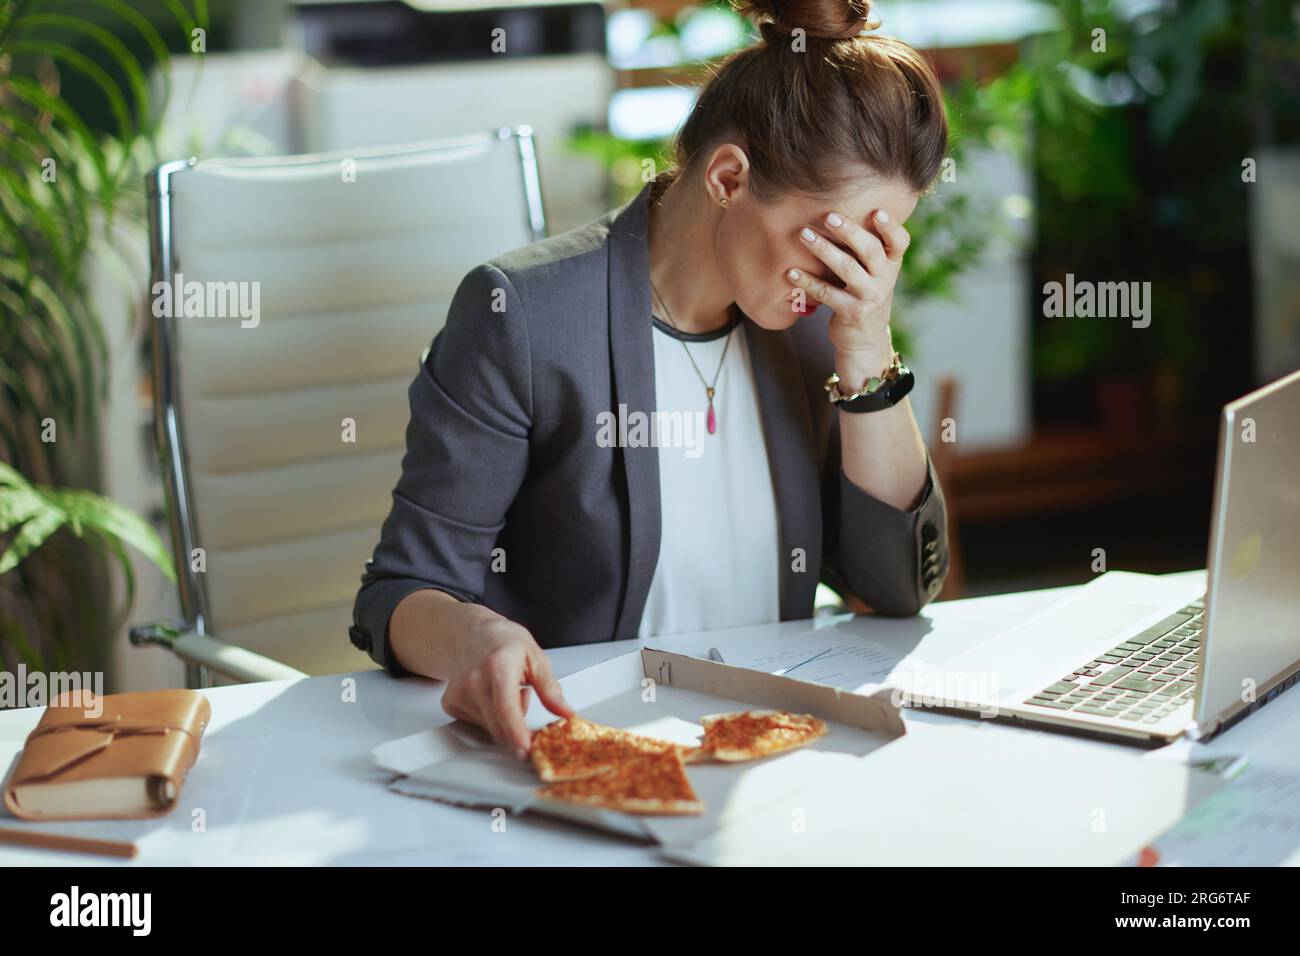 Lieu de travail durable. femme comptable moderne stressée dans un costume gris d'affaires dans le bureau vert moderne avec pizza et ordinateur portable. Banque D'Images